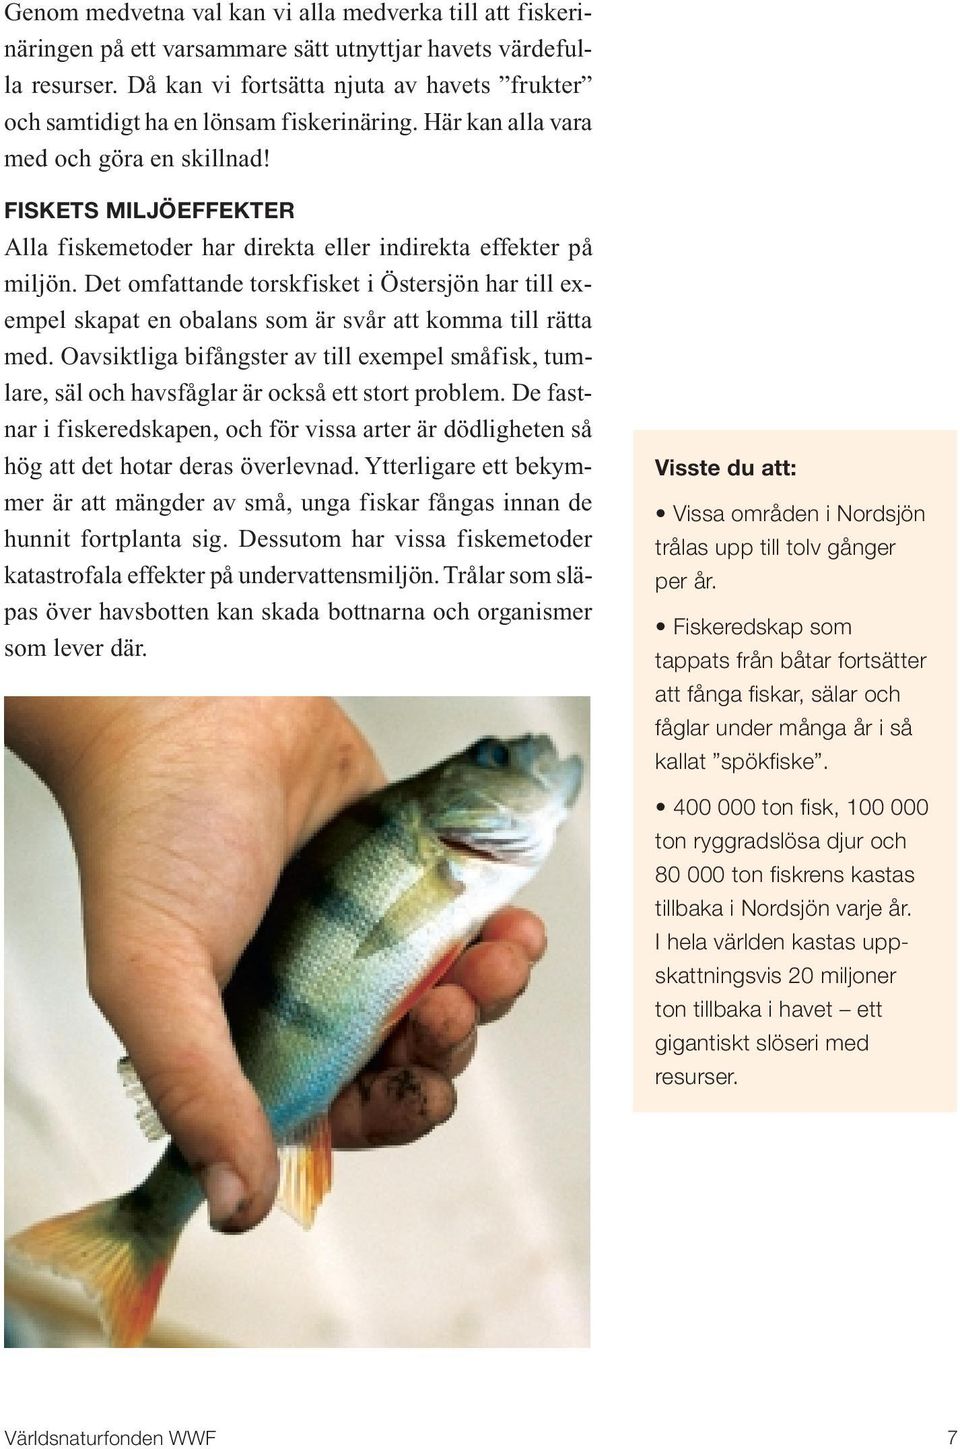 FISKETS MILJÖEFFEKTER Alla fiskemetoder har direkta eller indirekta effekter på miljön. Det omfattande torskfisket i Östersjön har till exempel skapat en obalans som är svår att komma till rätta med.